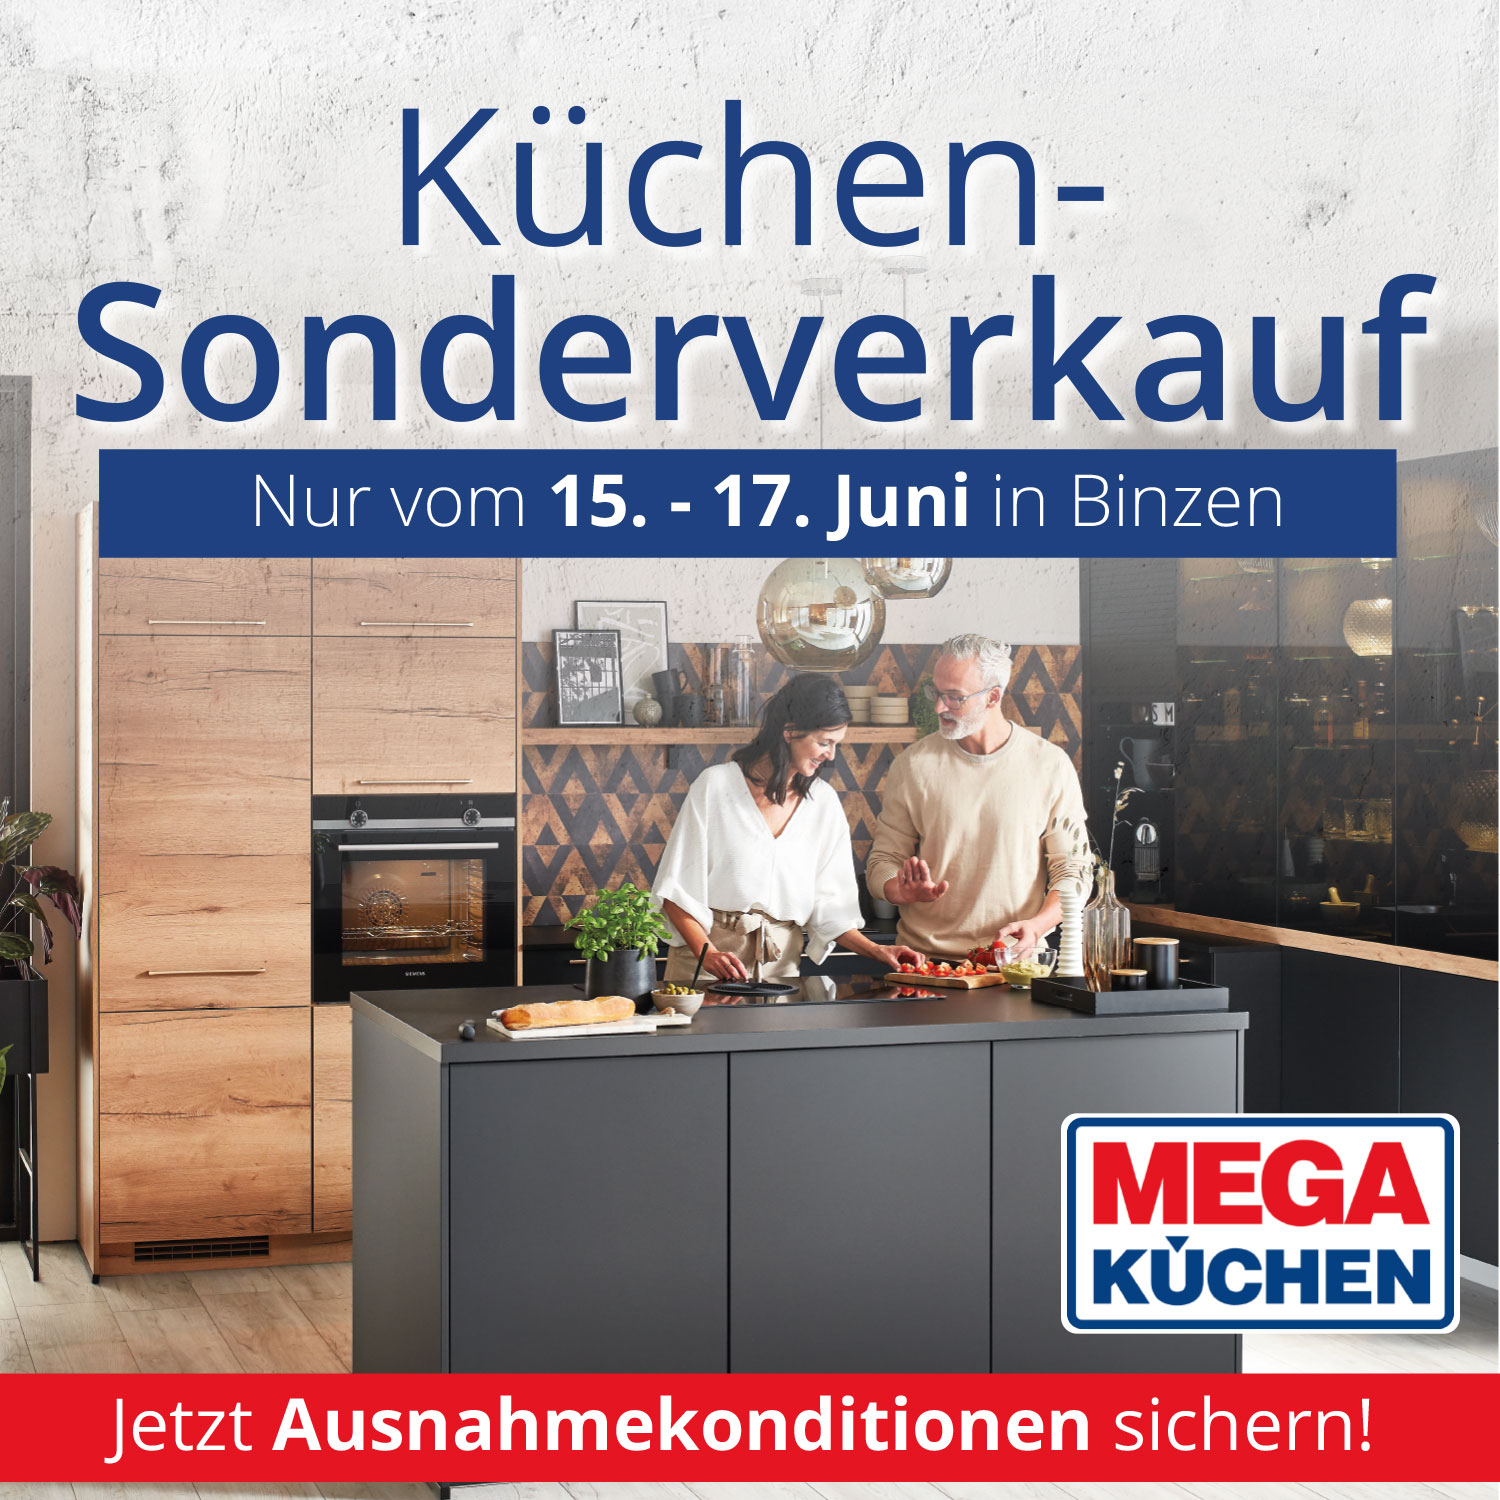 Großer Küchen-Sonderverkauf vom 15. - 17. Juni bei Mega Küchen in Binzen!